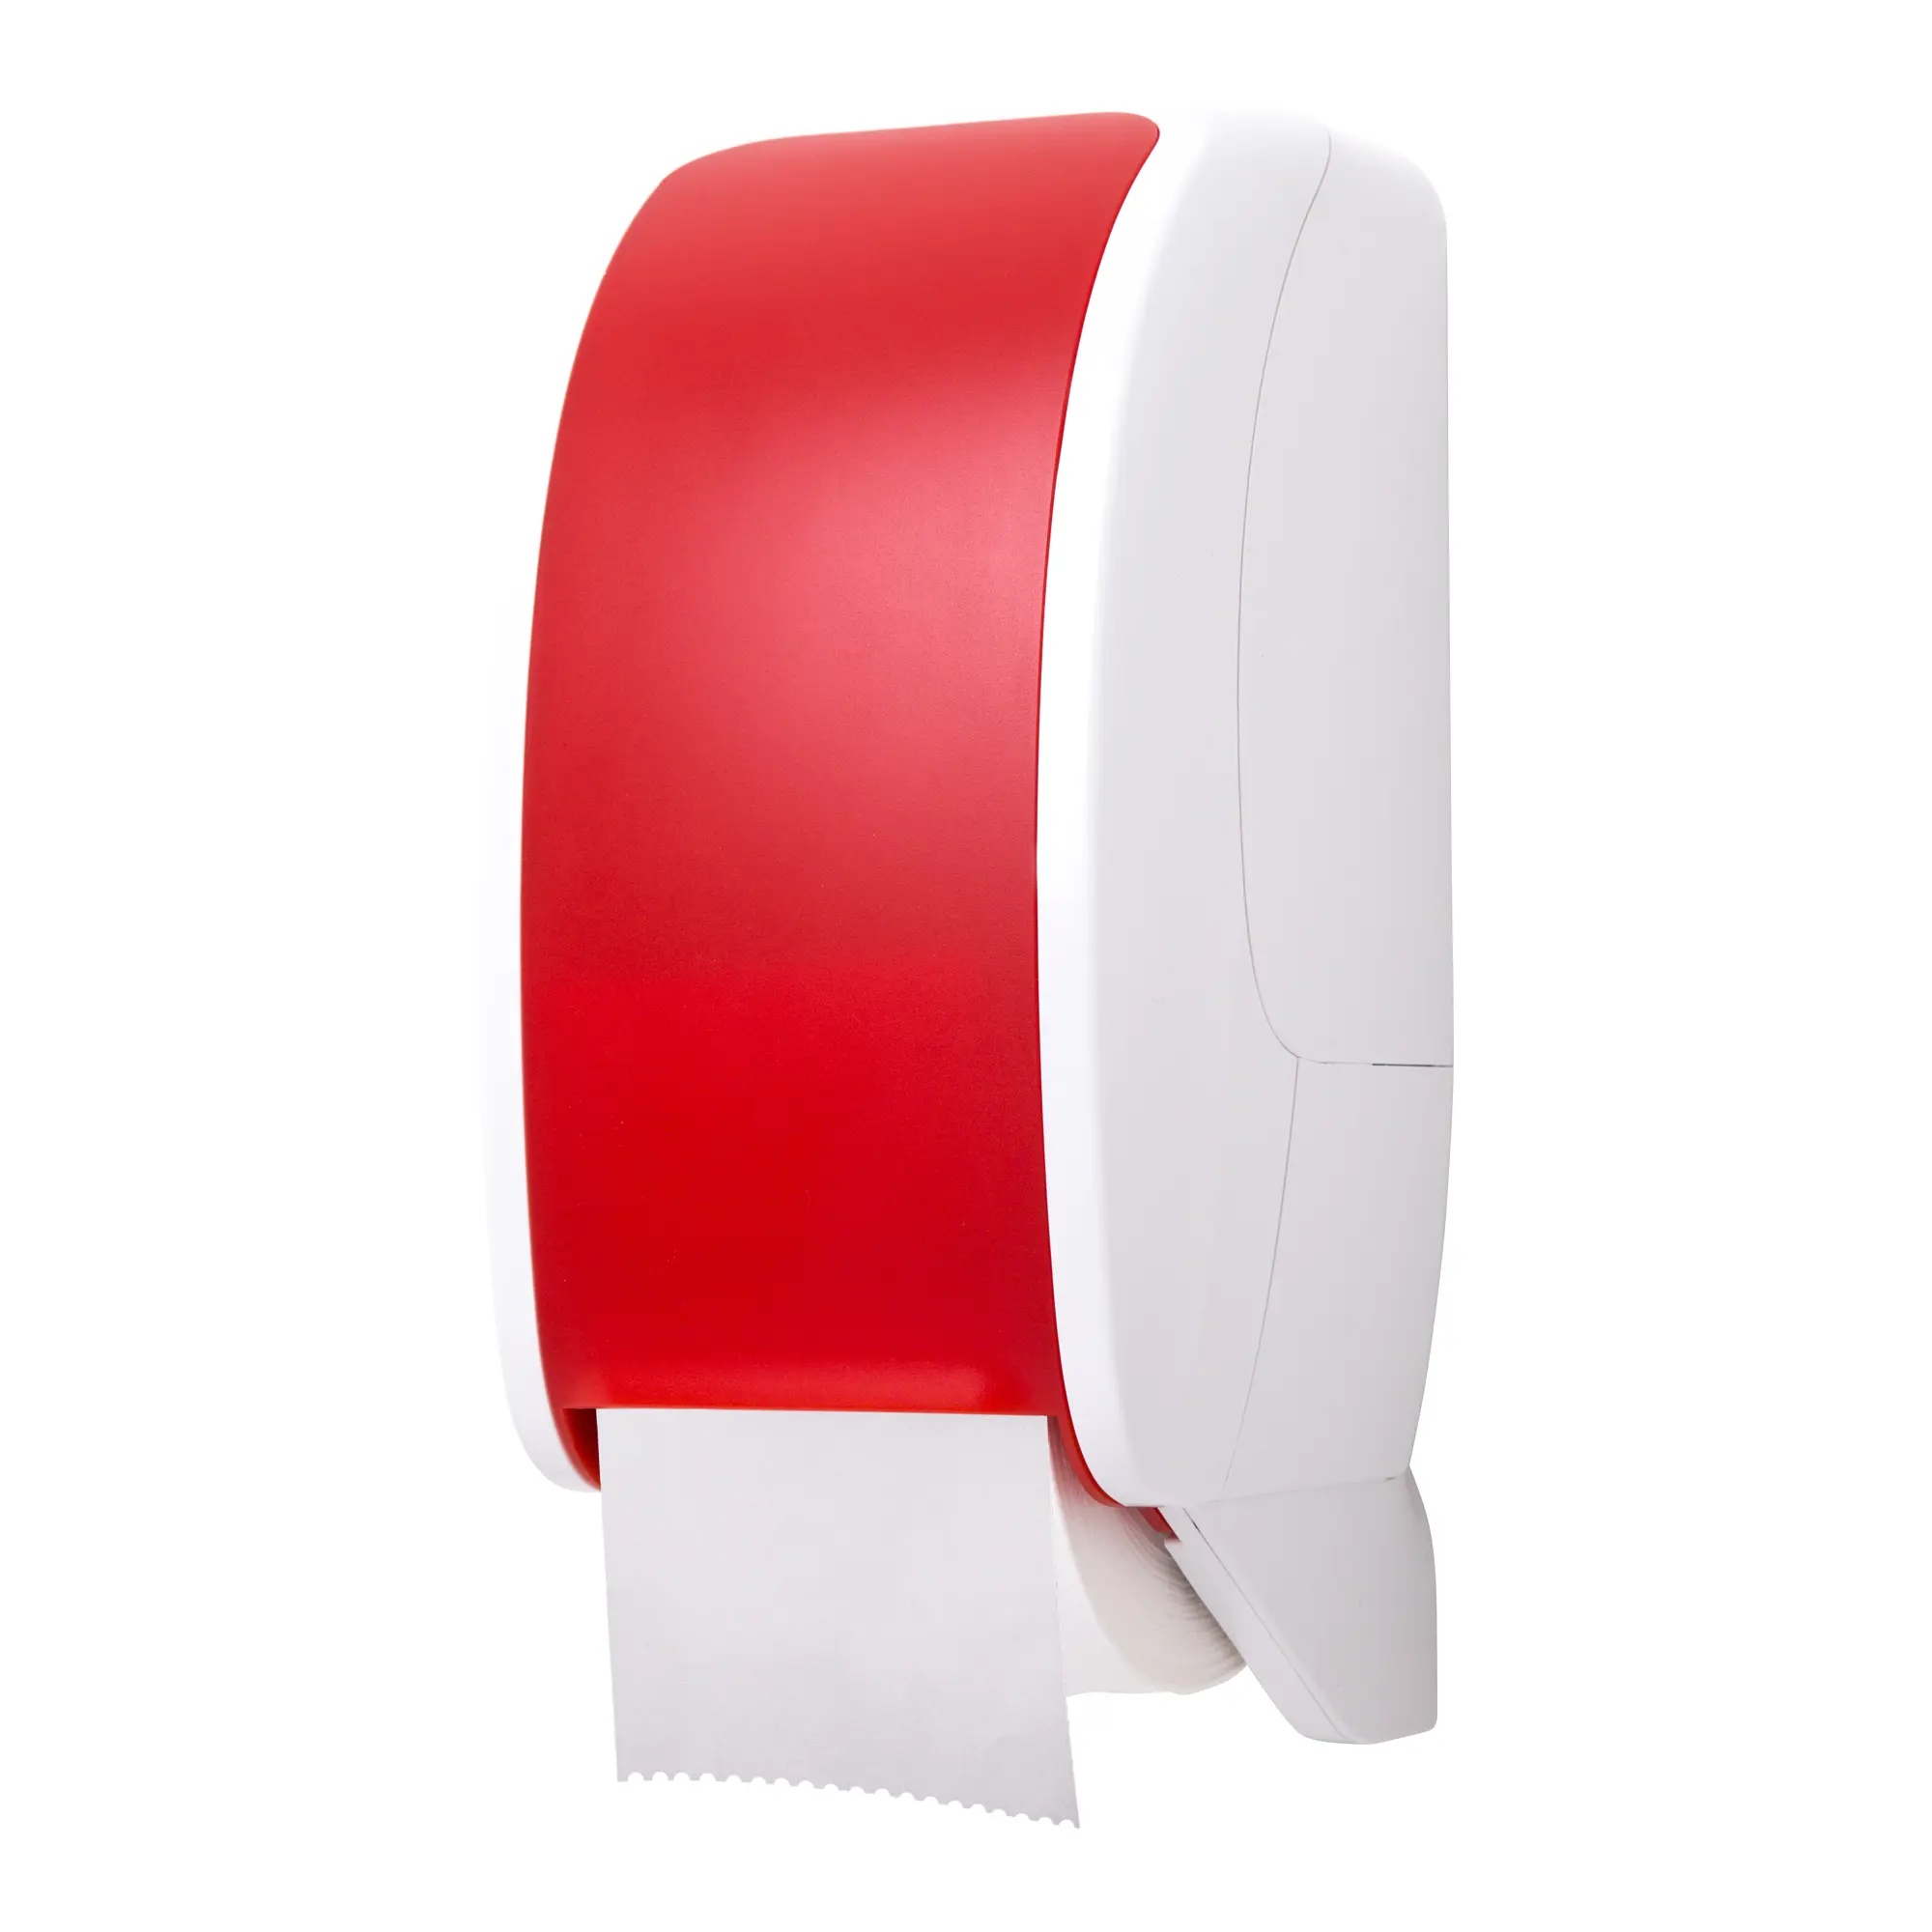 Cosmos Toilettenpapierspender rot/weiß Cosmos-2400_1